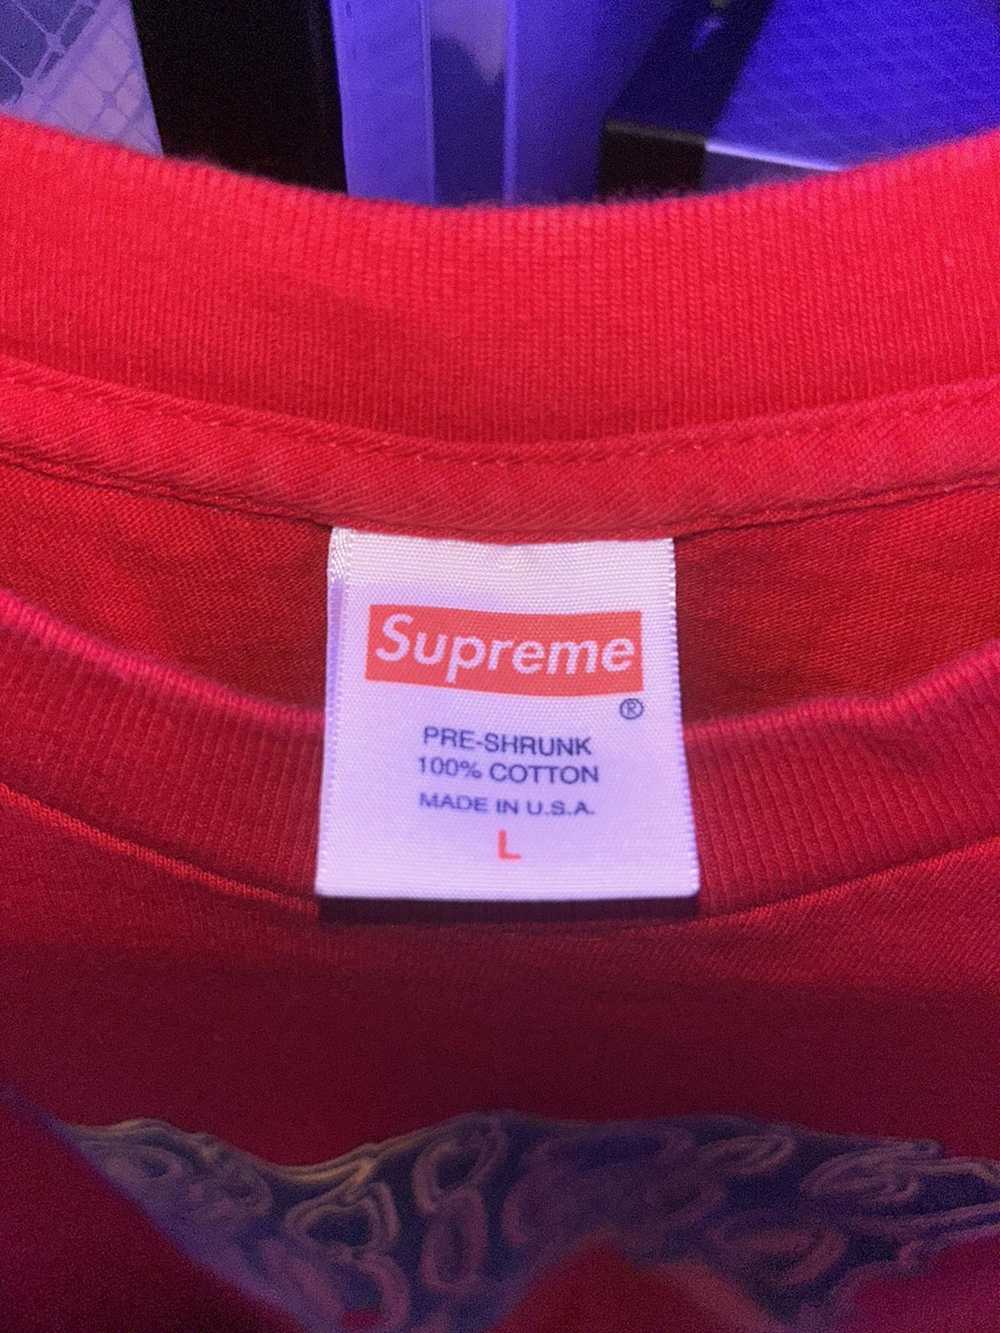 Supreme Supreme “F@$&” Tee Shirt RARE size Large … - image 3